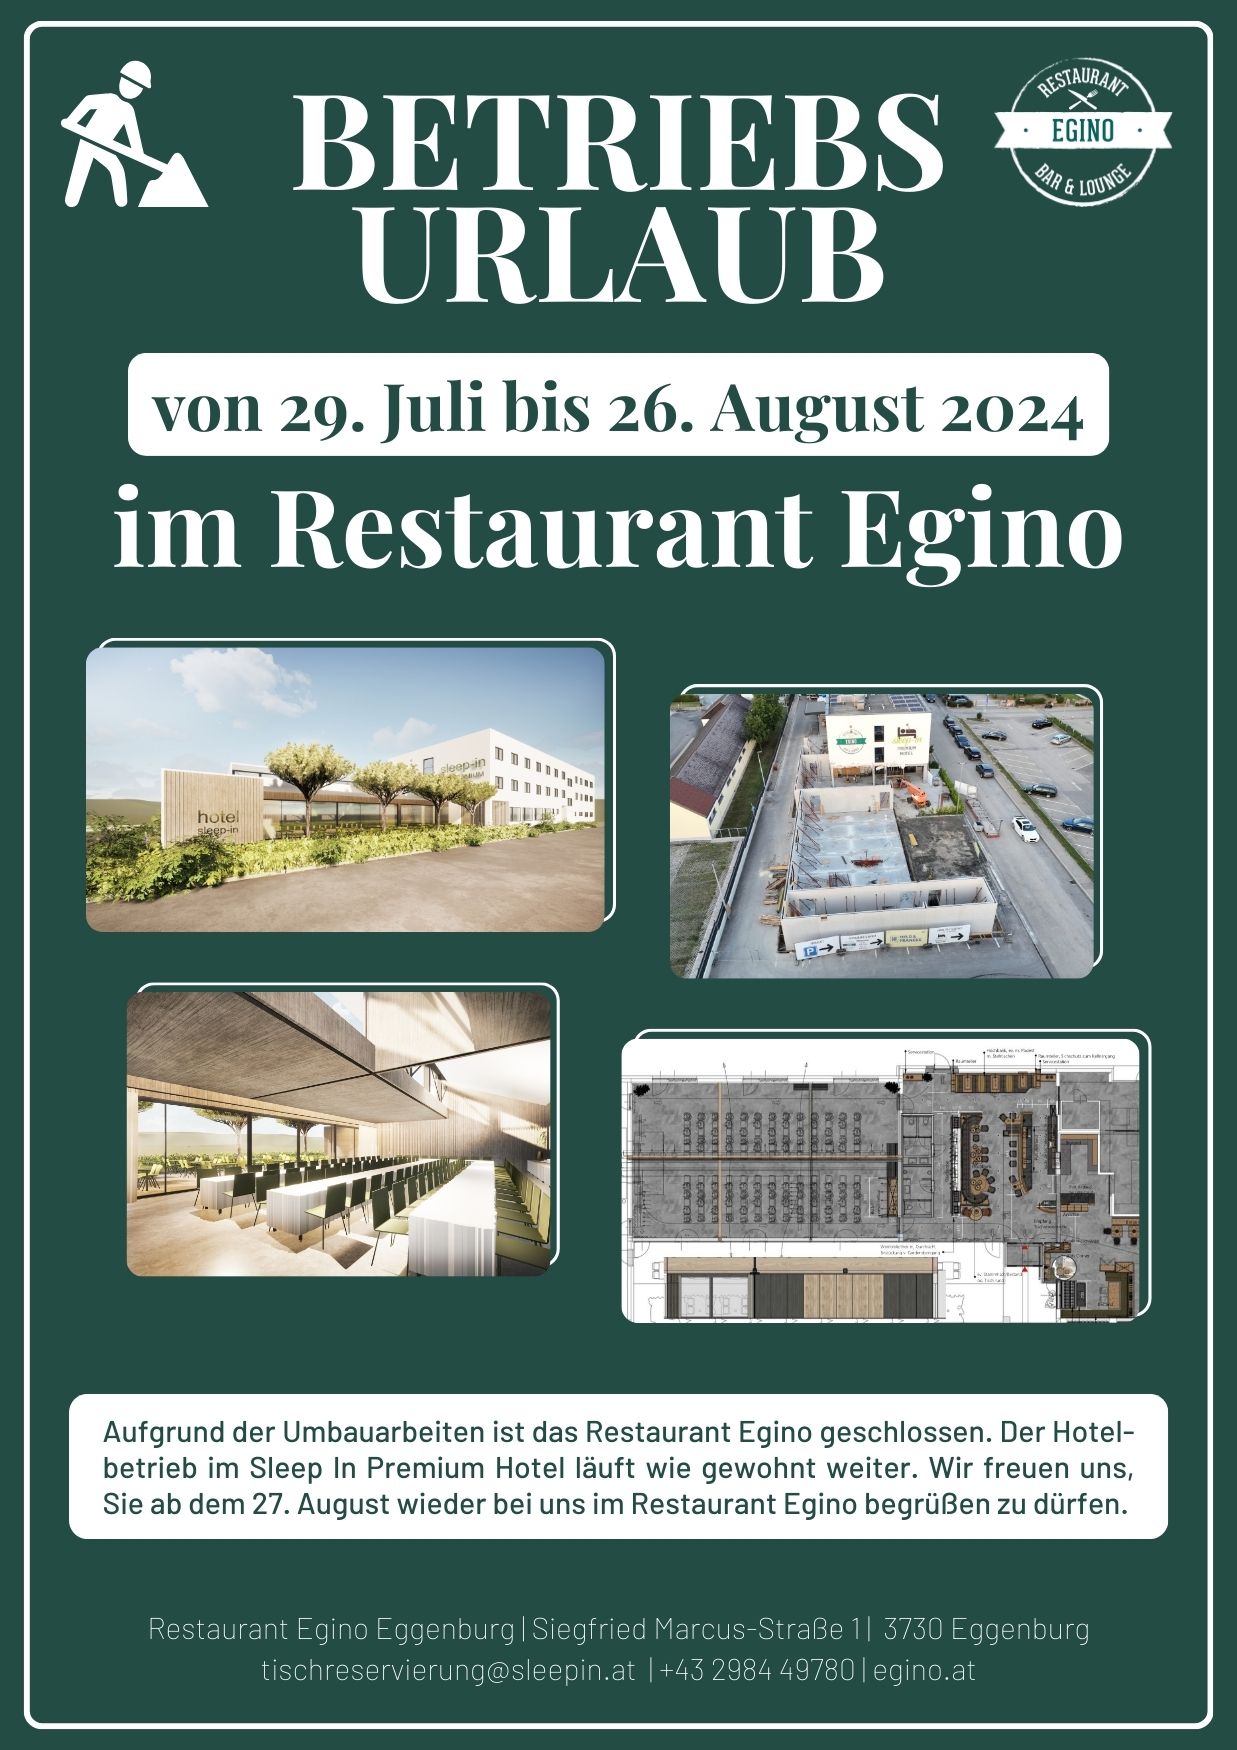 Betriebsurlaub Restaurant Egino